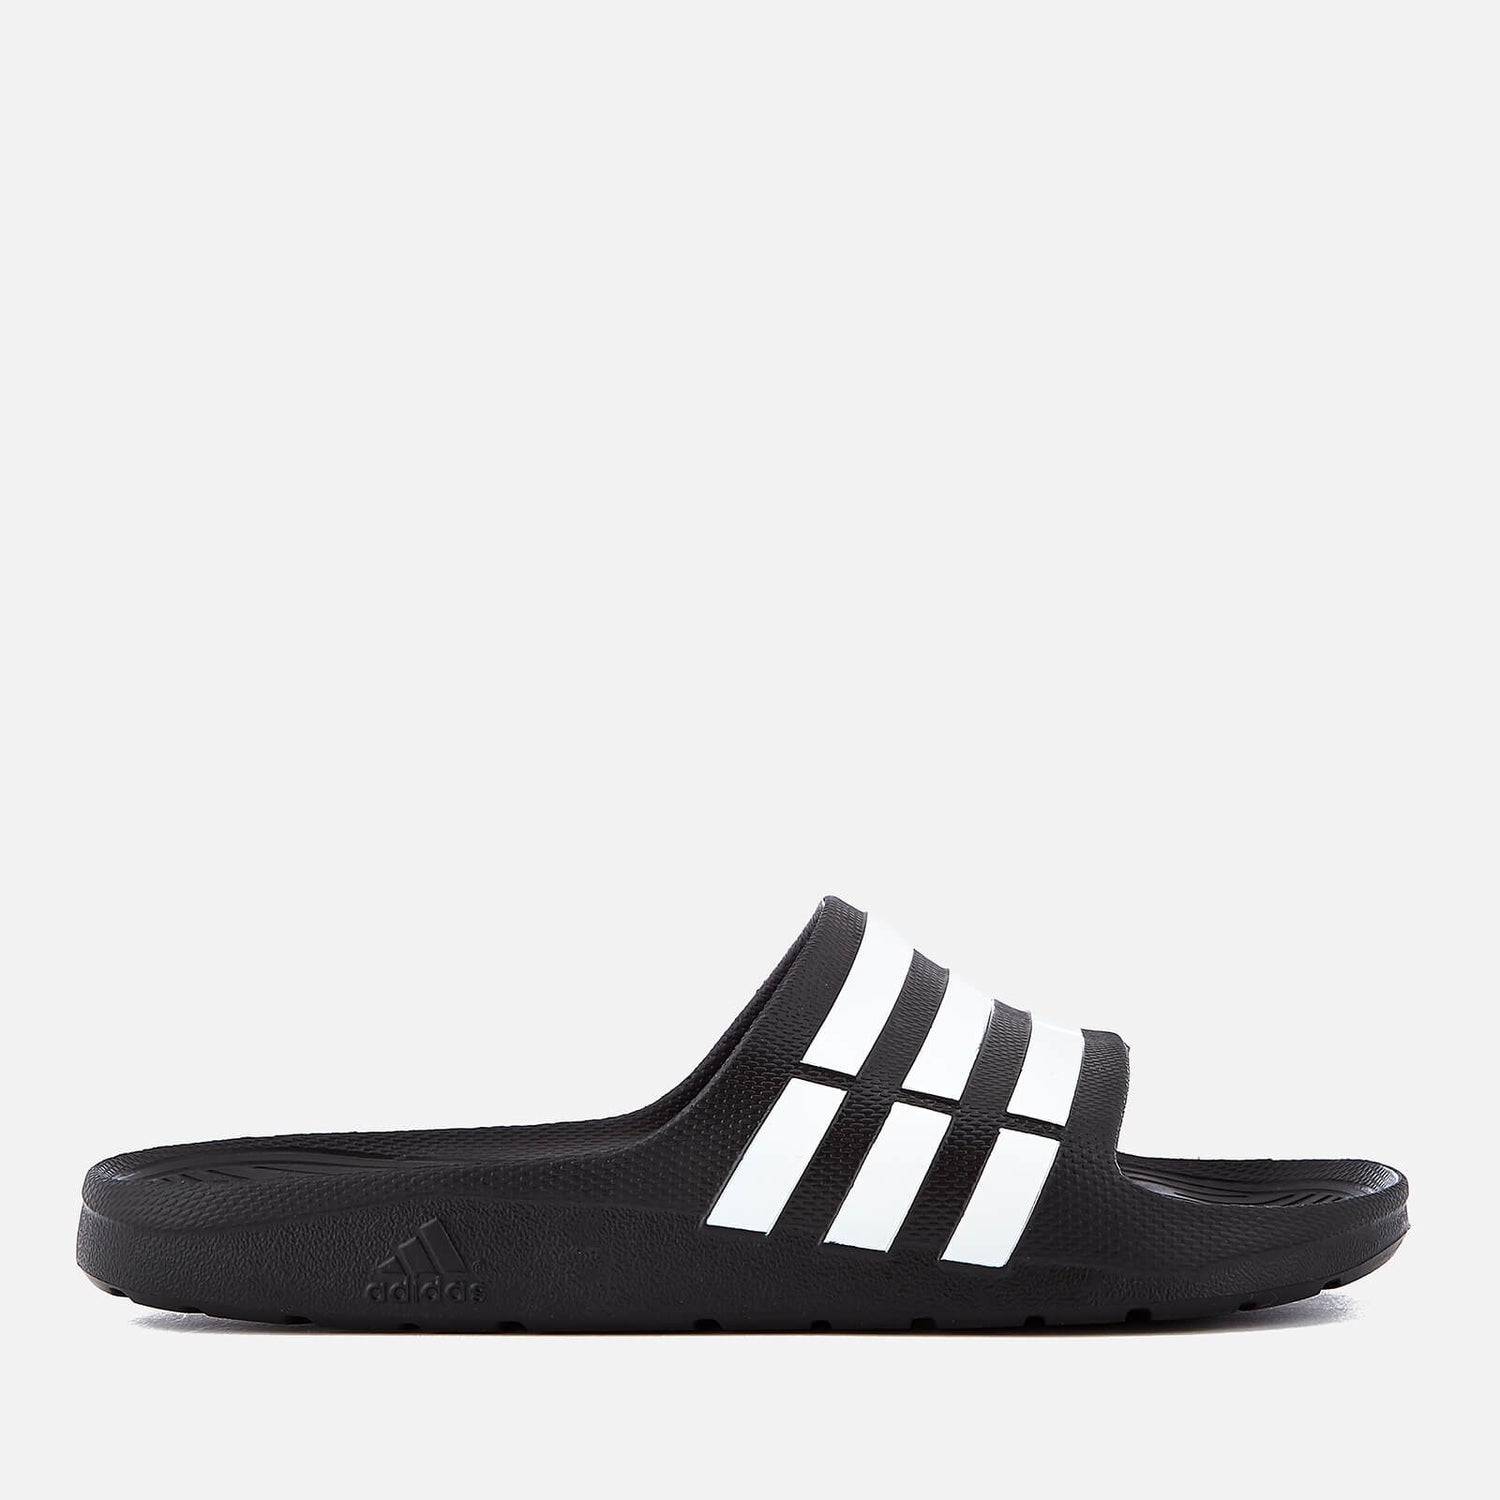 puesto Necesitar Hizo un contrato adidas Duramo Slide Sandals - Core Black | ProBikeKit.com